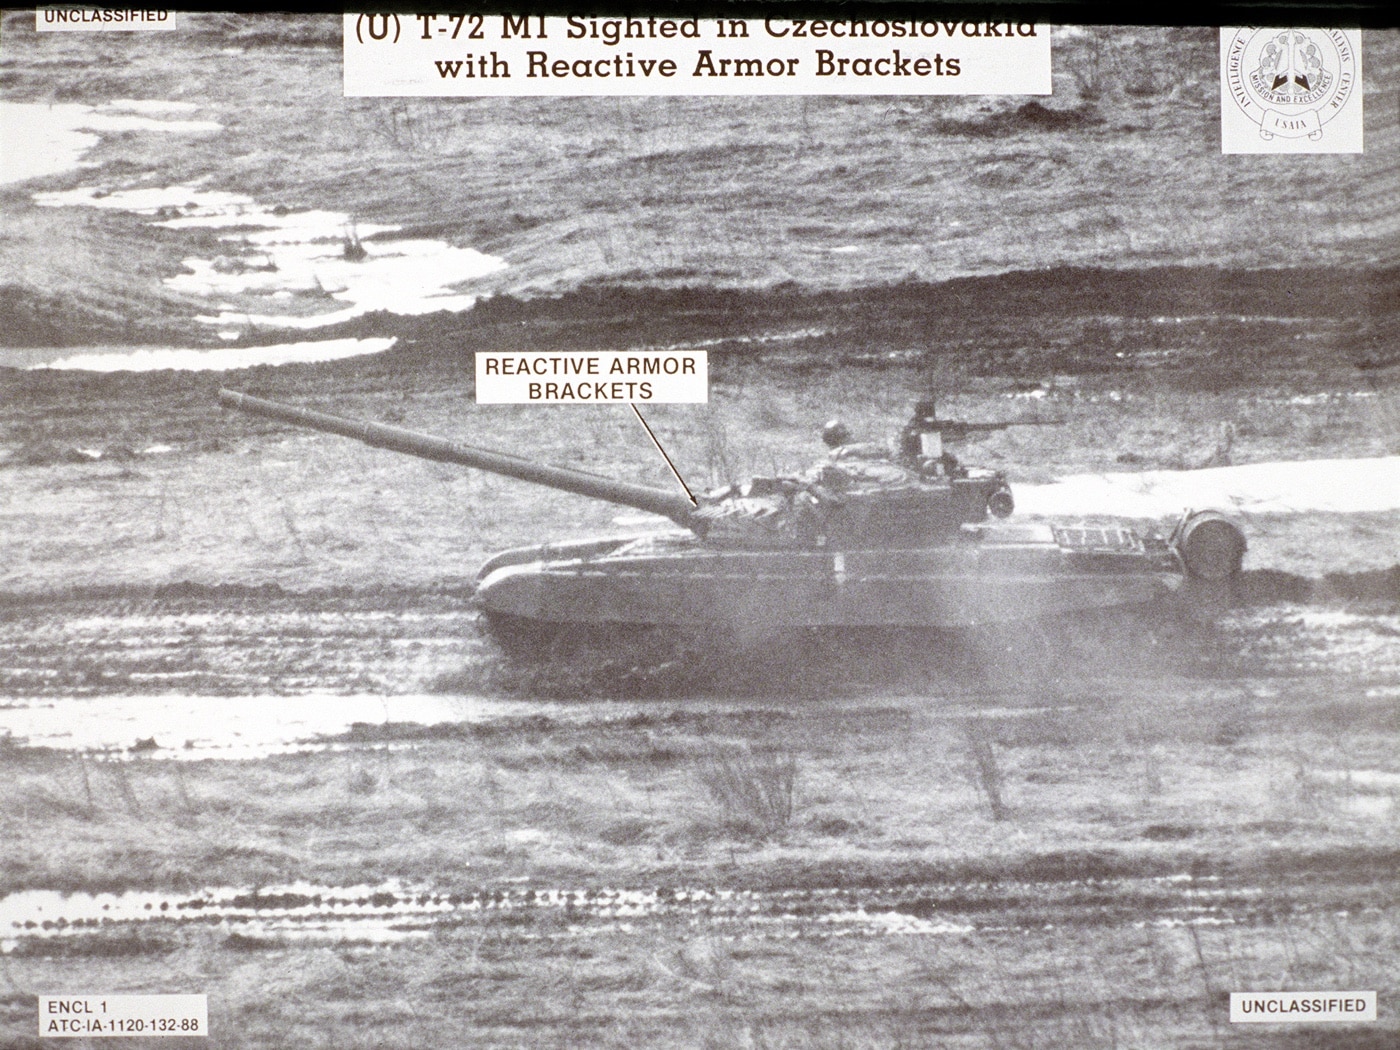 t-72m spy photo from czechoslovakia